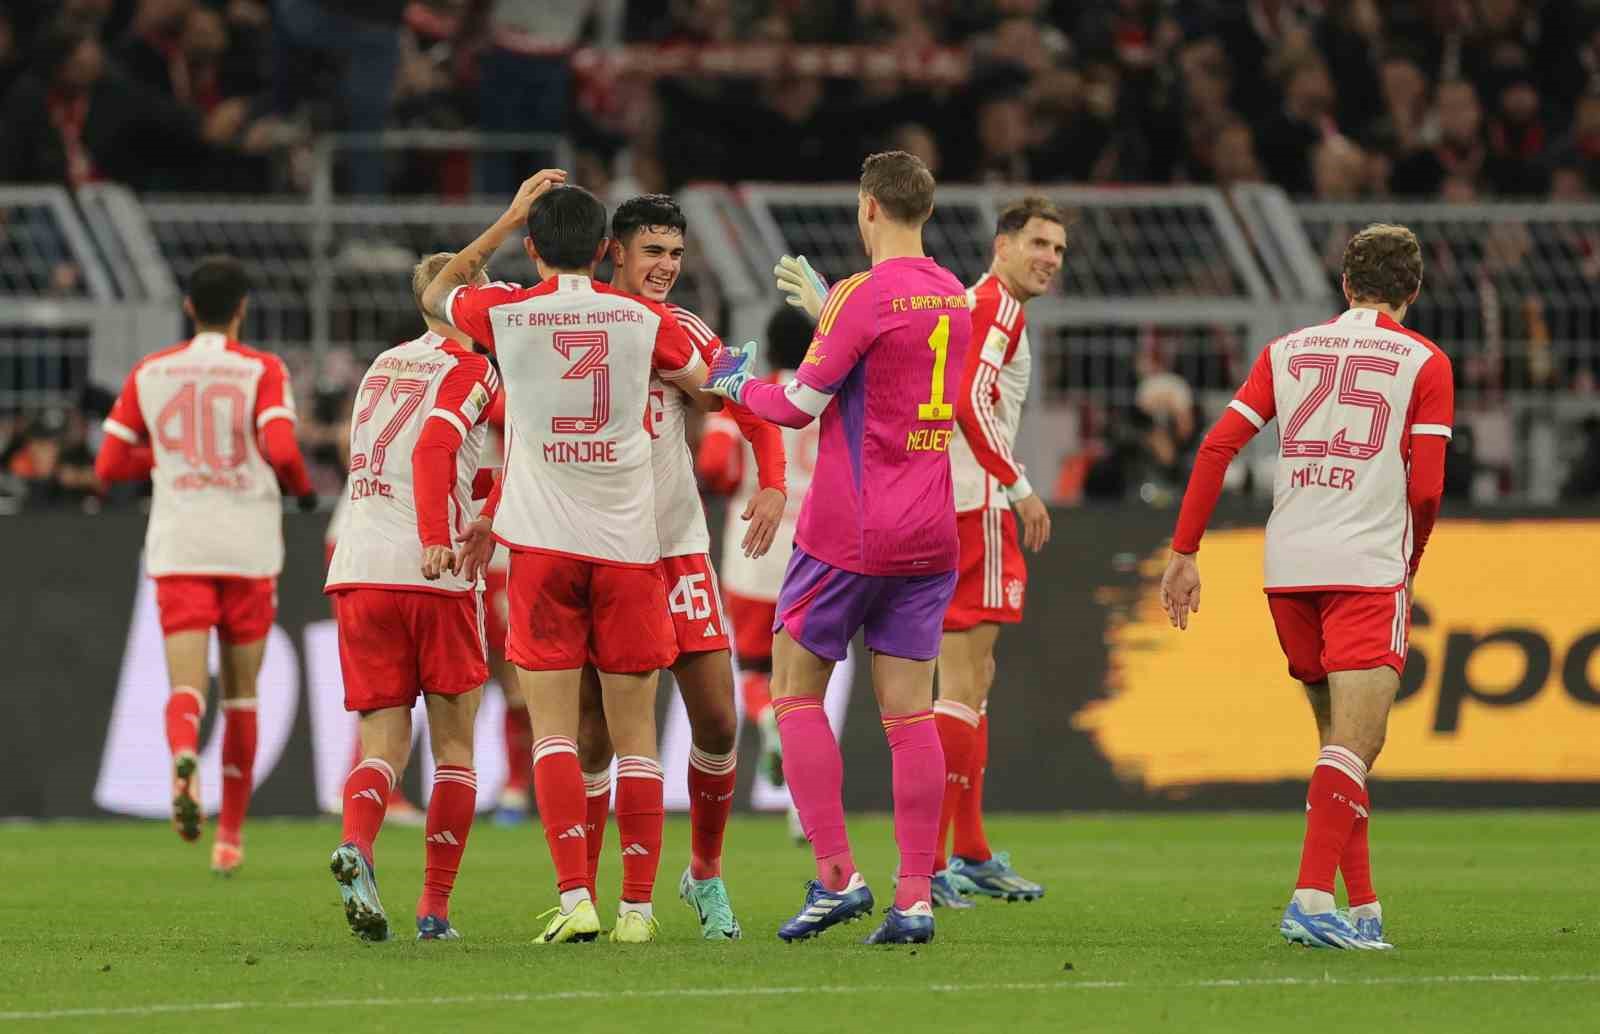 Harry Kane hat-trick yaptı, Bayern Münih coştu